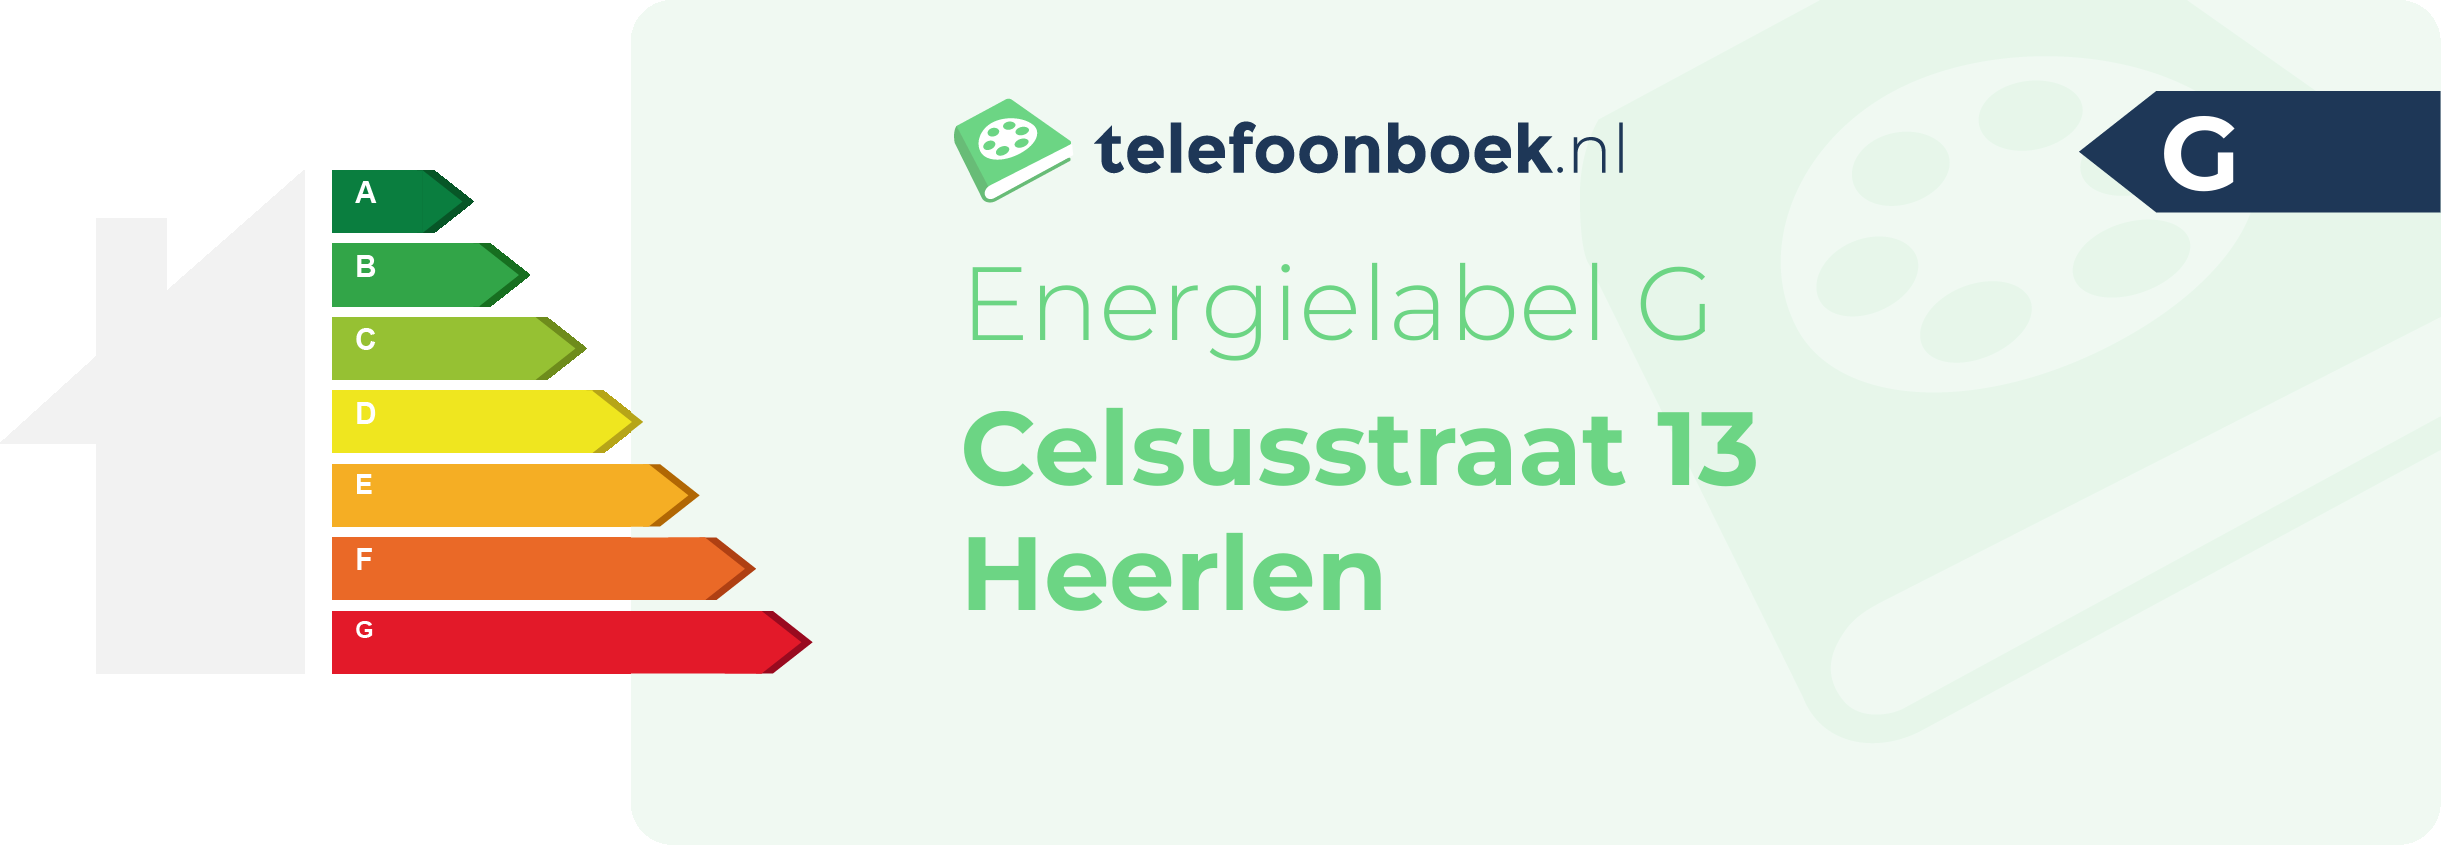 Energielabel Celsusstraat 13 Heerlen